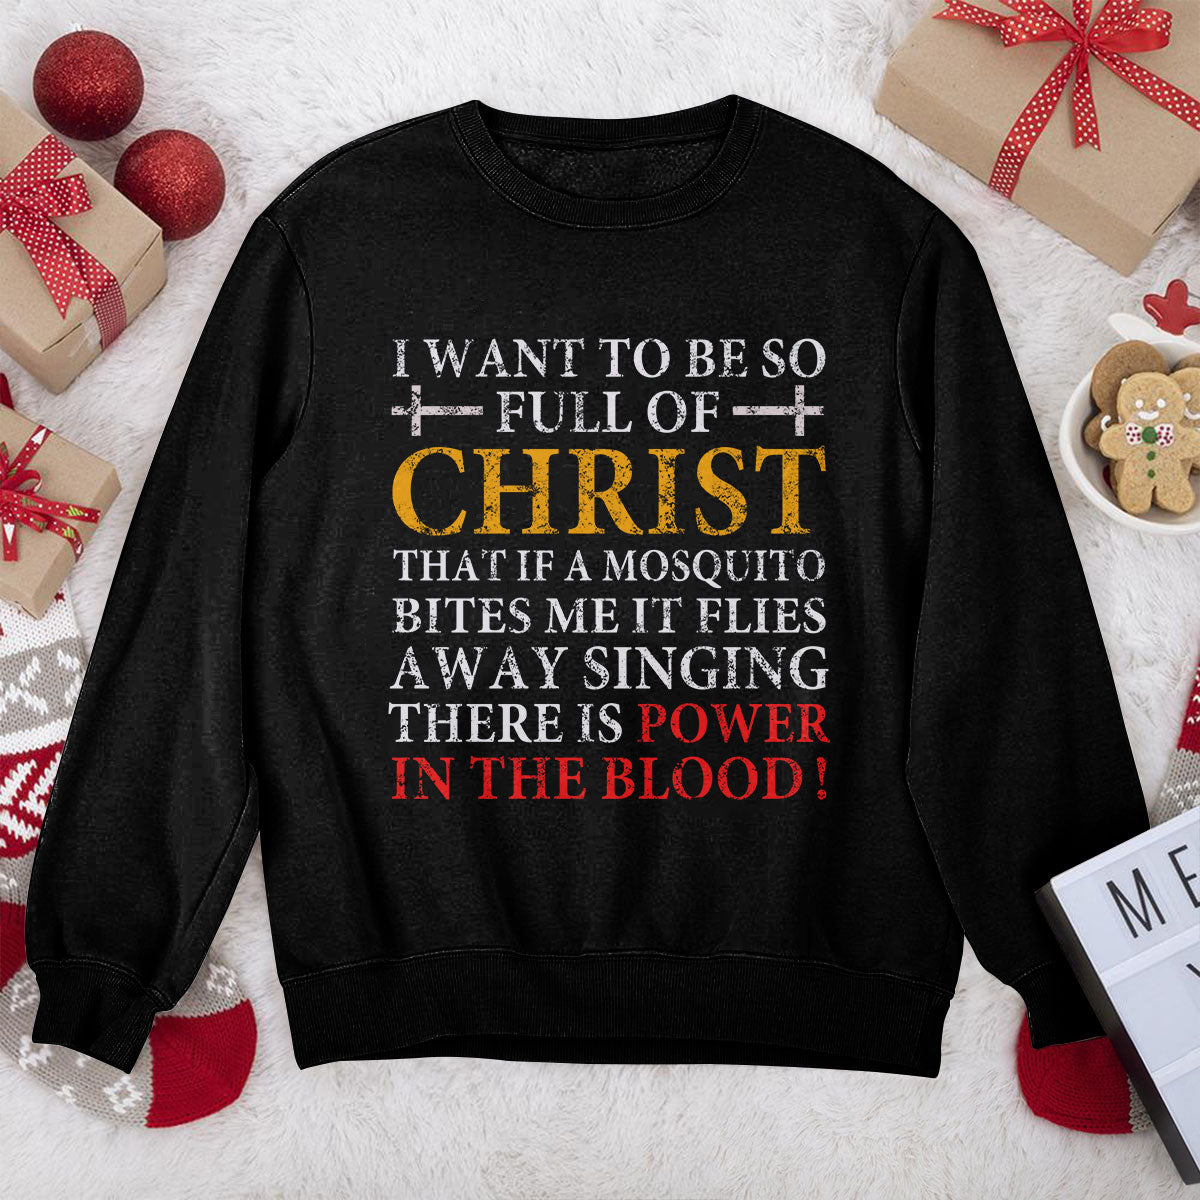 Awesome Christian Unisex Sweatshirt - I Want To Be So Full Of Christ 2DUSNAM1016